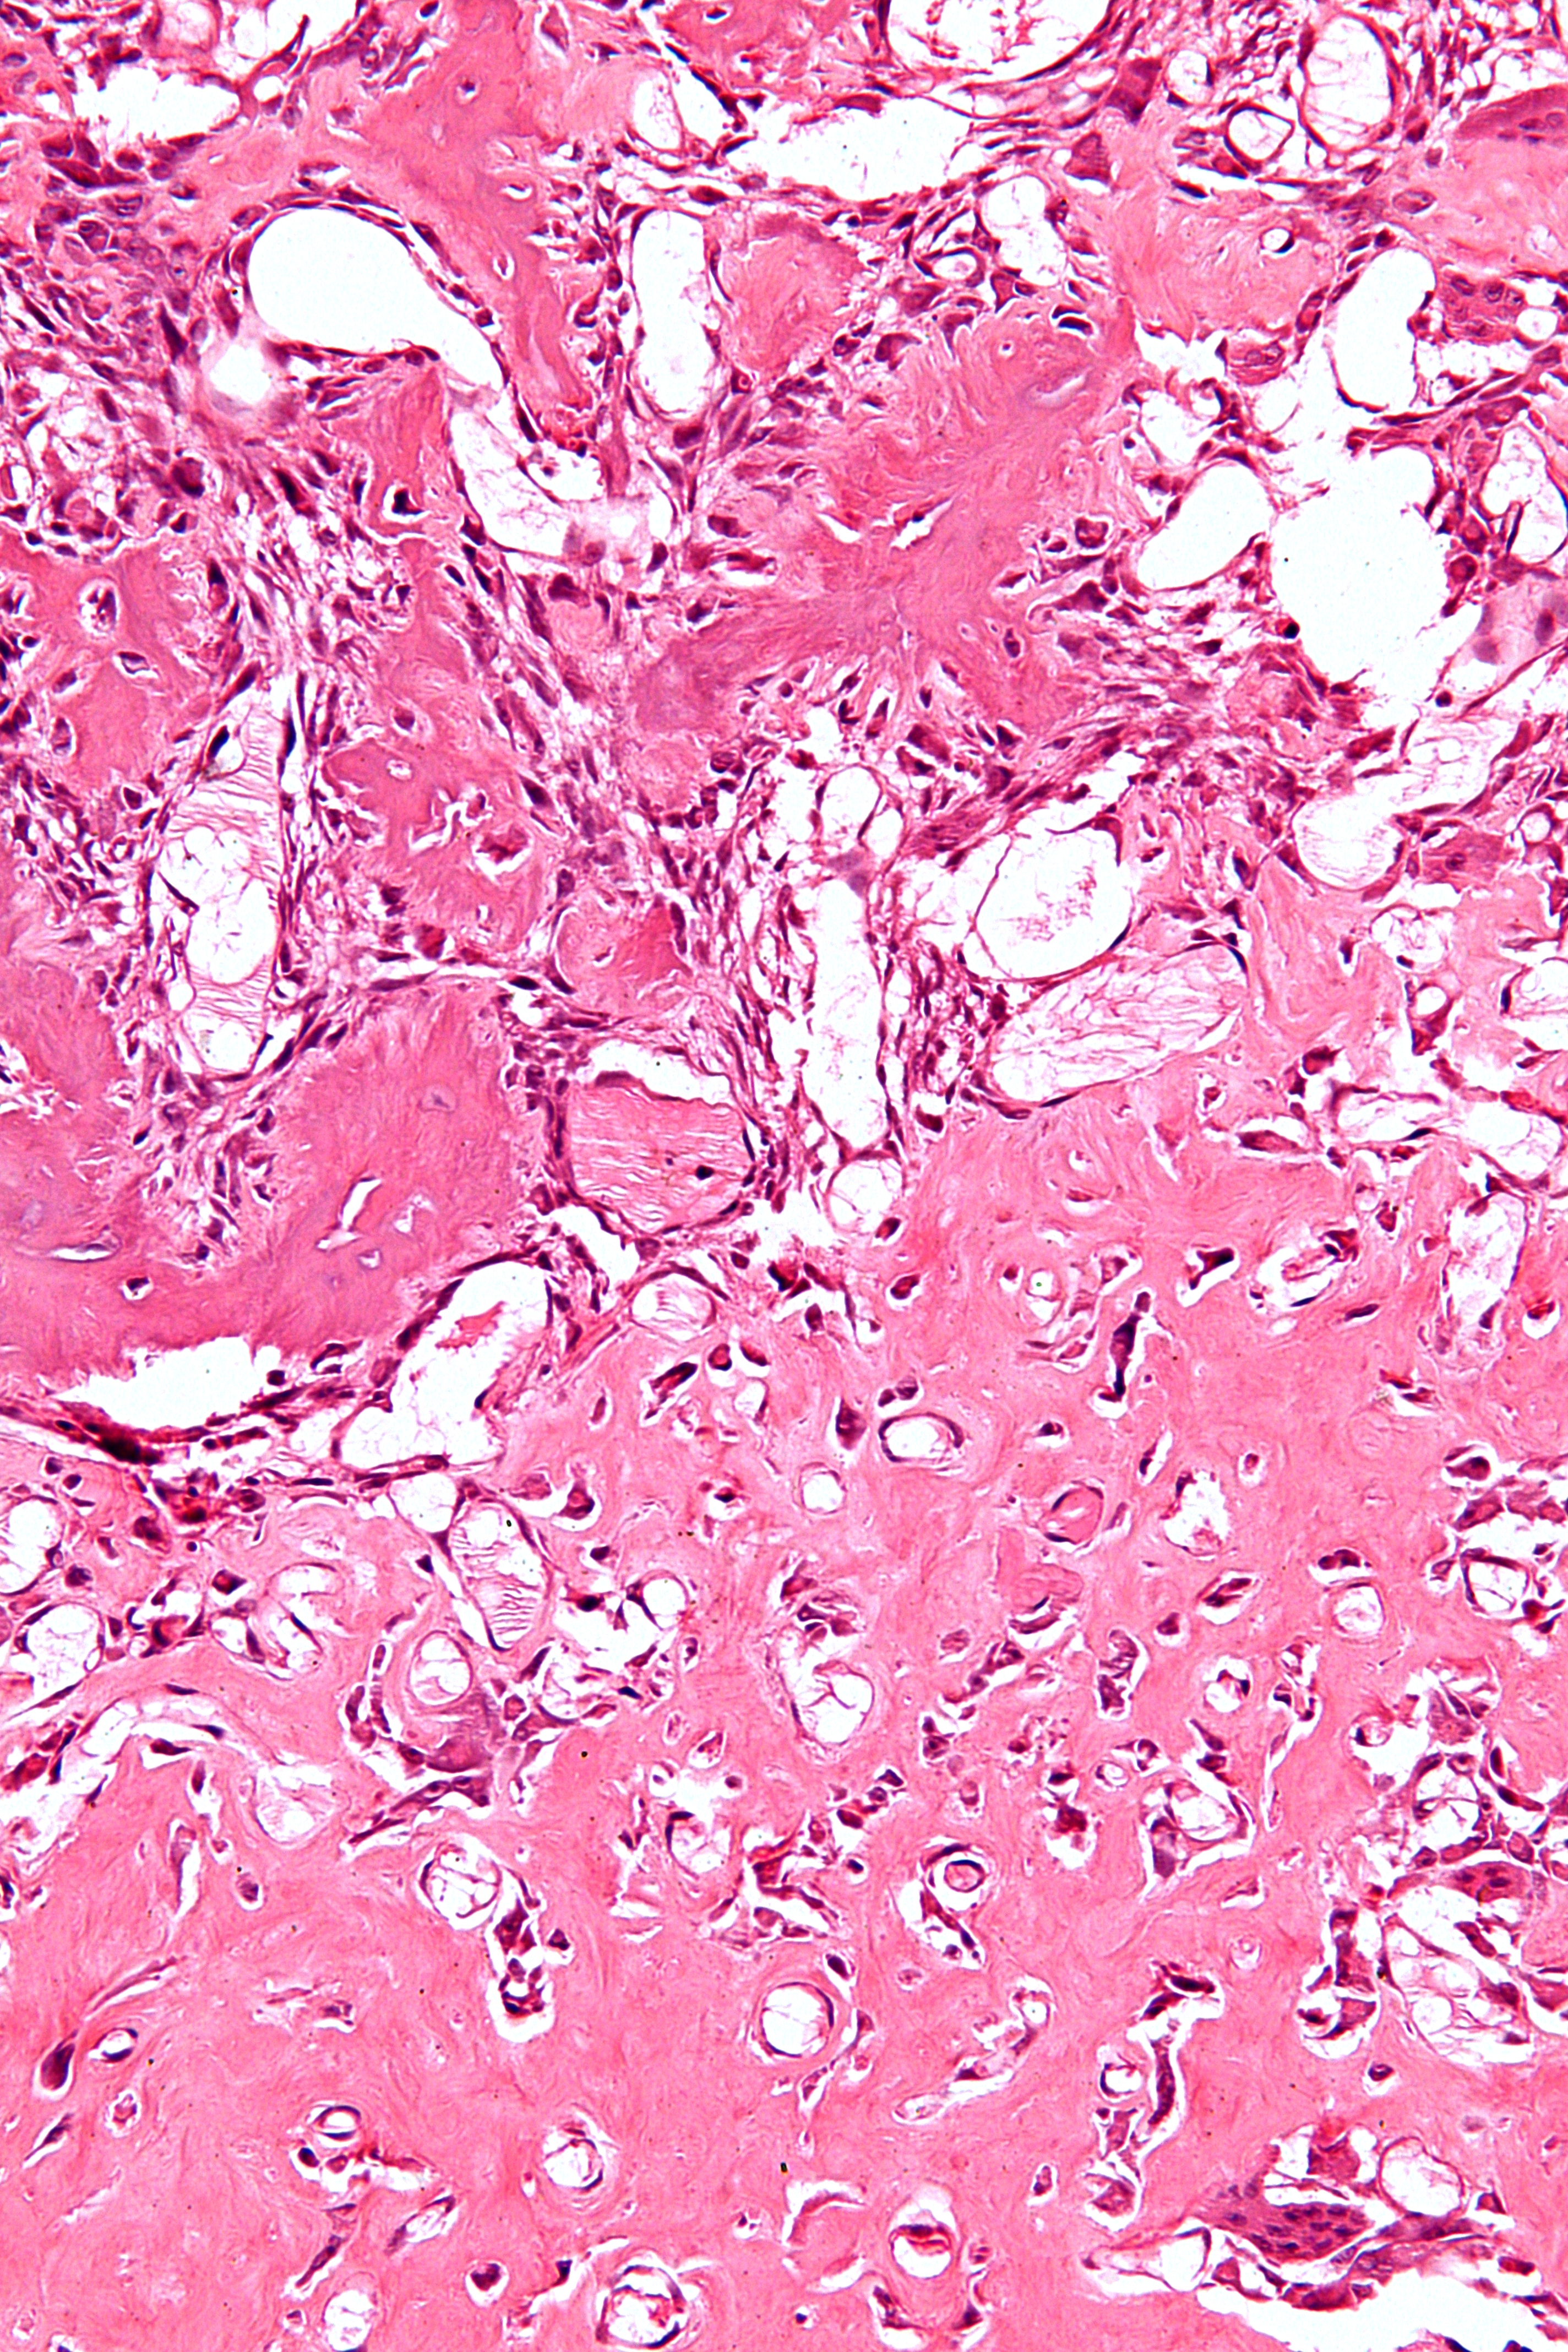 File:Osteoblastoma Histology.jpg